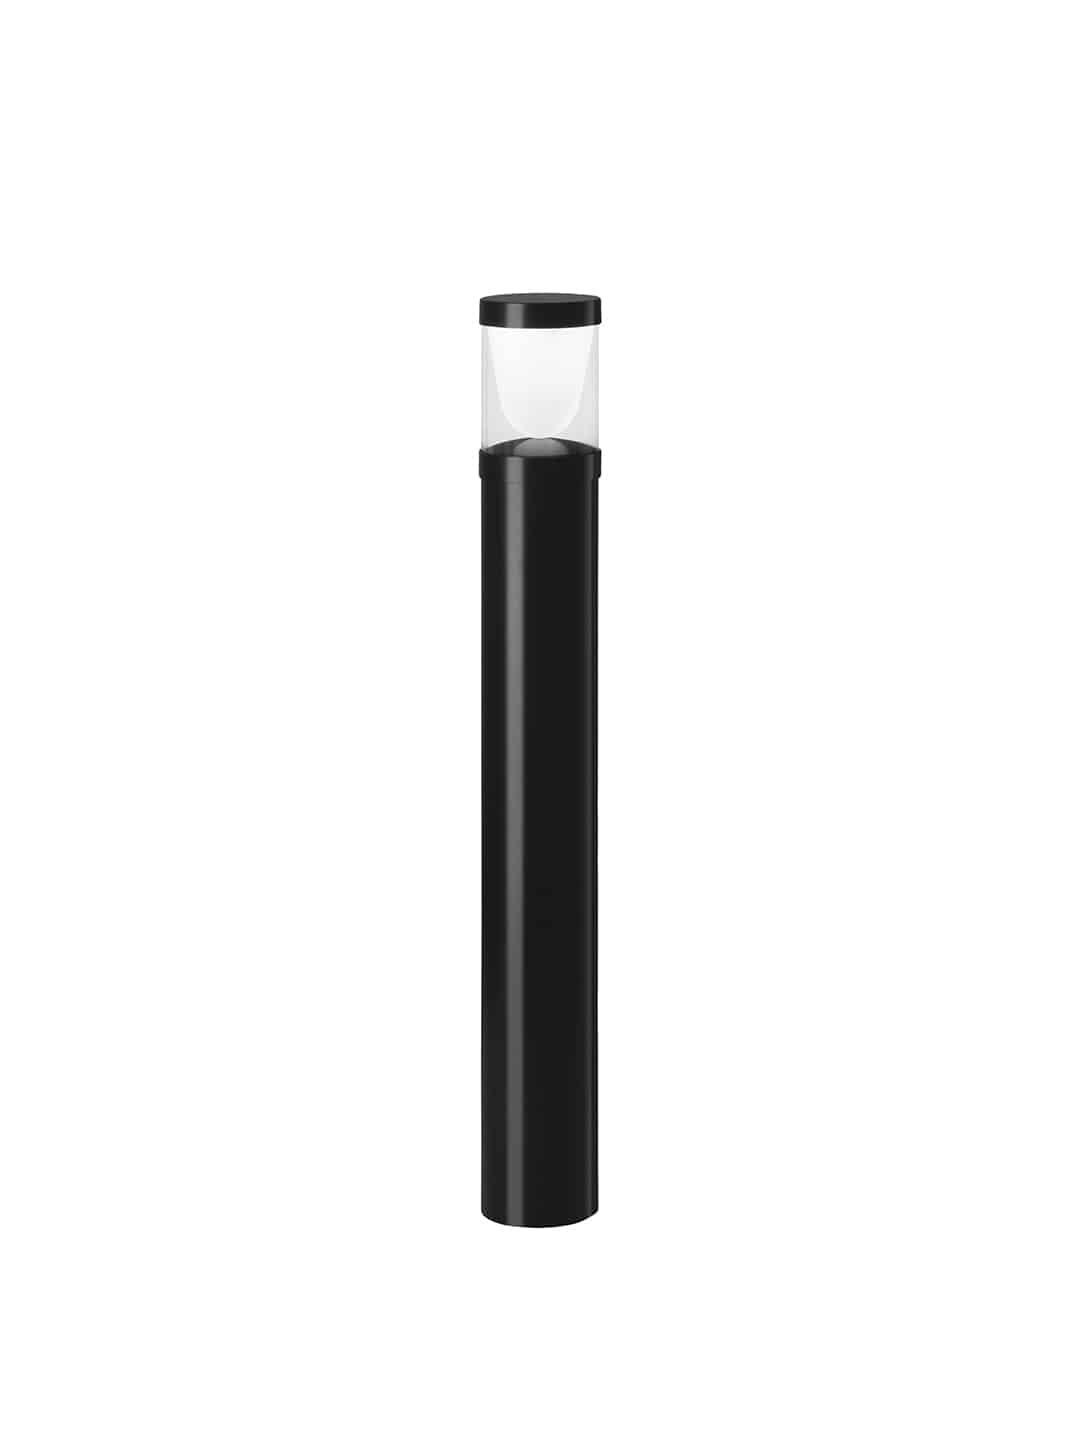 Стильный уличный светильник Zero Lighting Convex Bollard черного цвета